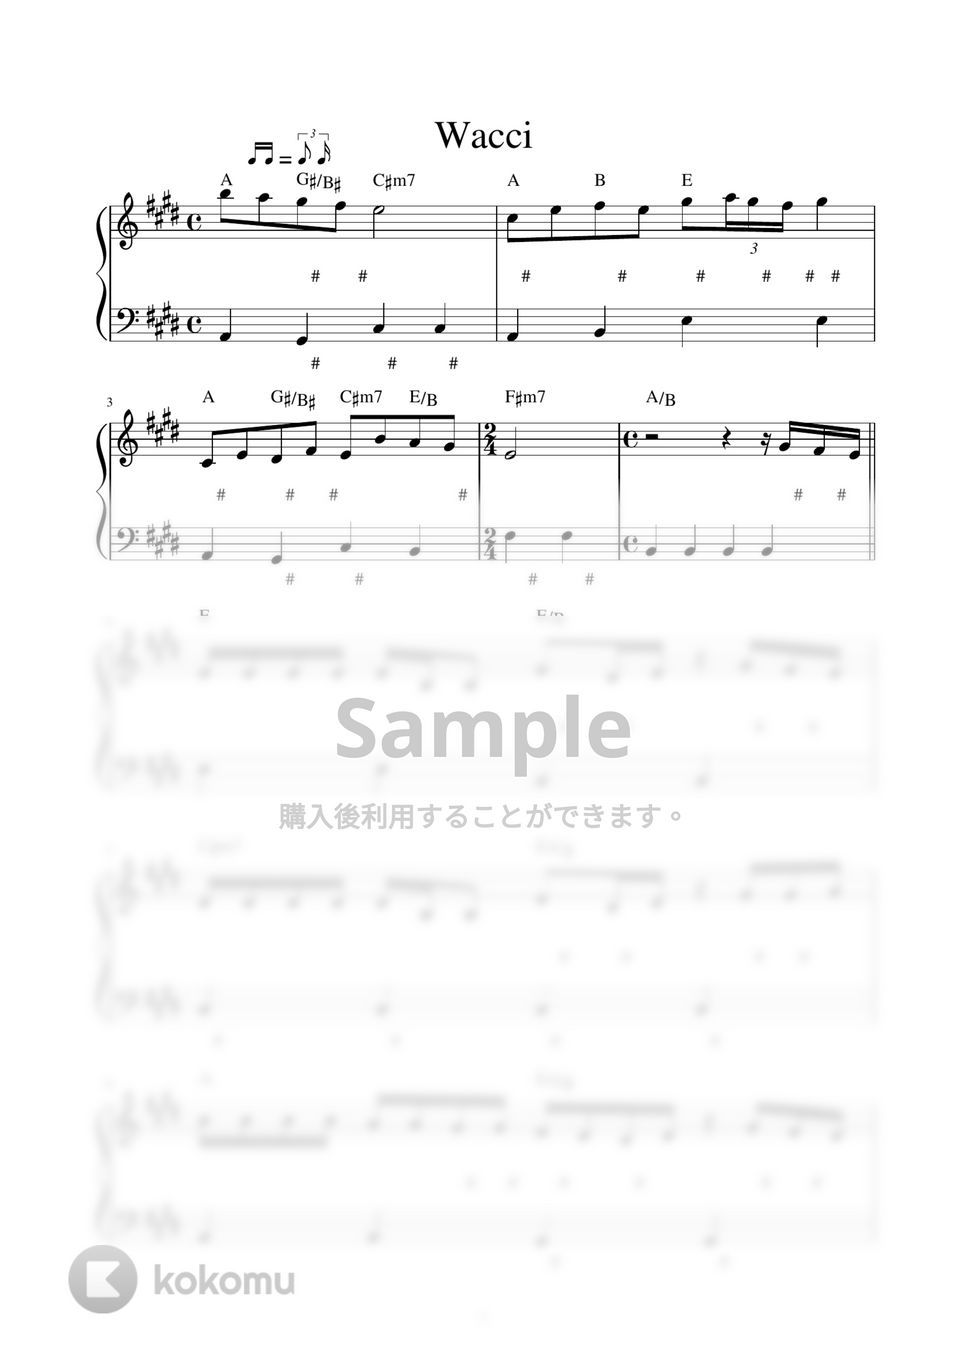 wacci - 恋だろ (ピアノ楽譜 / かんたん両手 / 歌詞付き / ドレミ付き / 初心者向き) by piano.tokyo